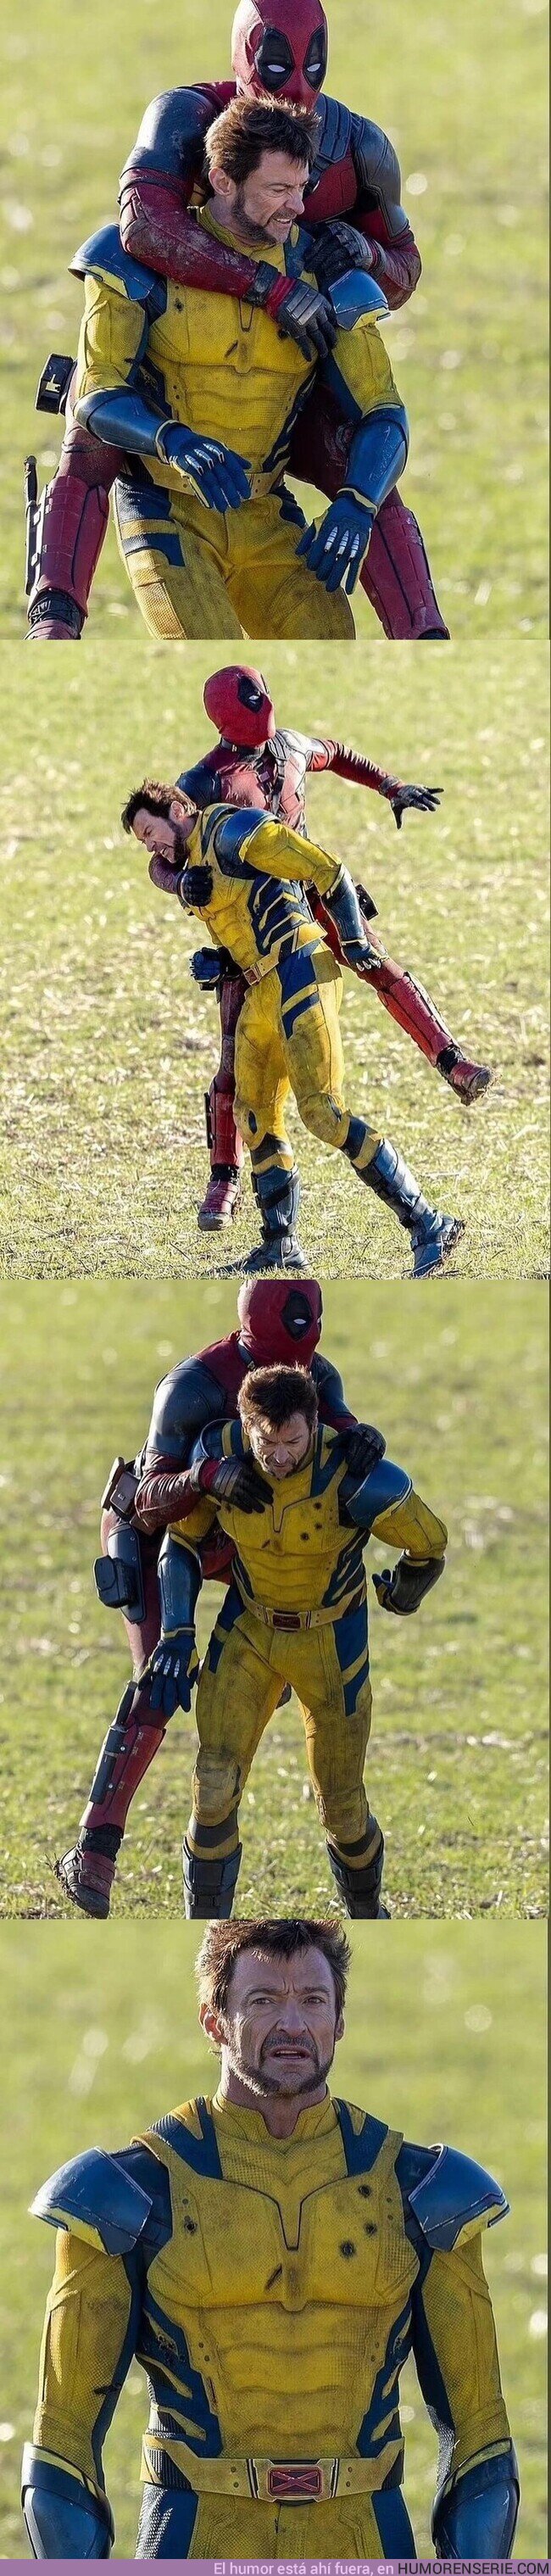 156771 - Wolverine y Deadpool se divierten juntos, por @somosgeeksnews